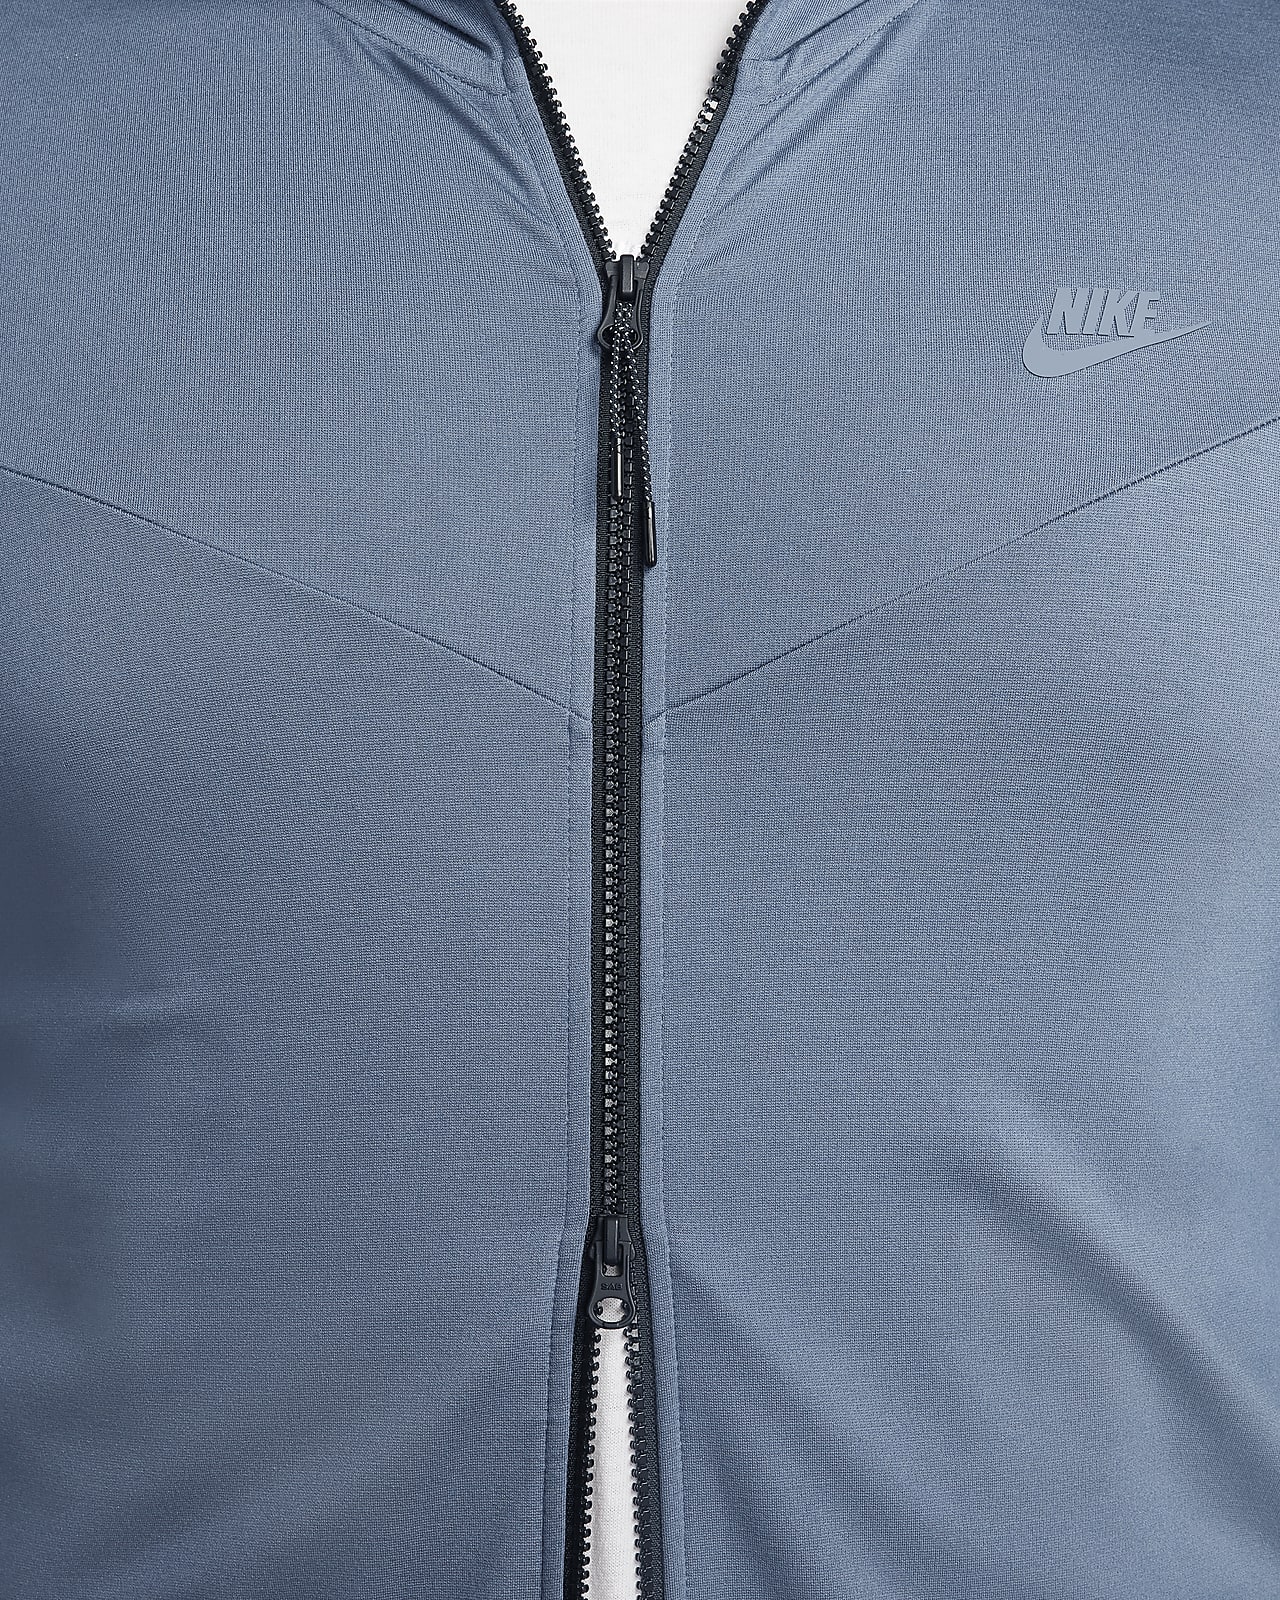 Nike Men's England Full-Zip Tech Fleece Hoodie